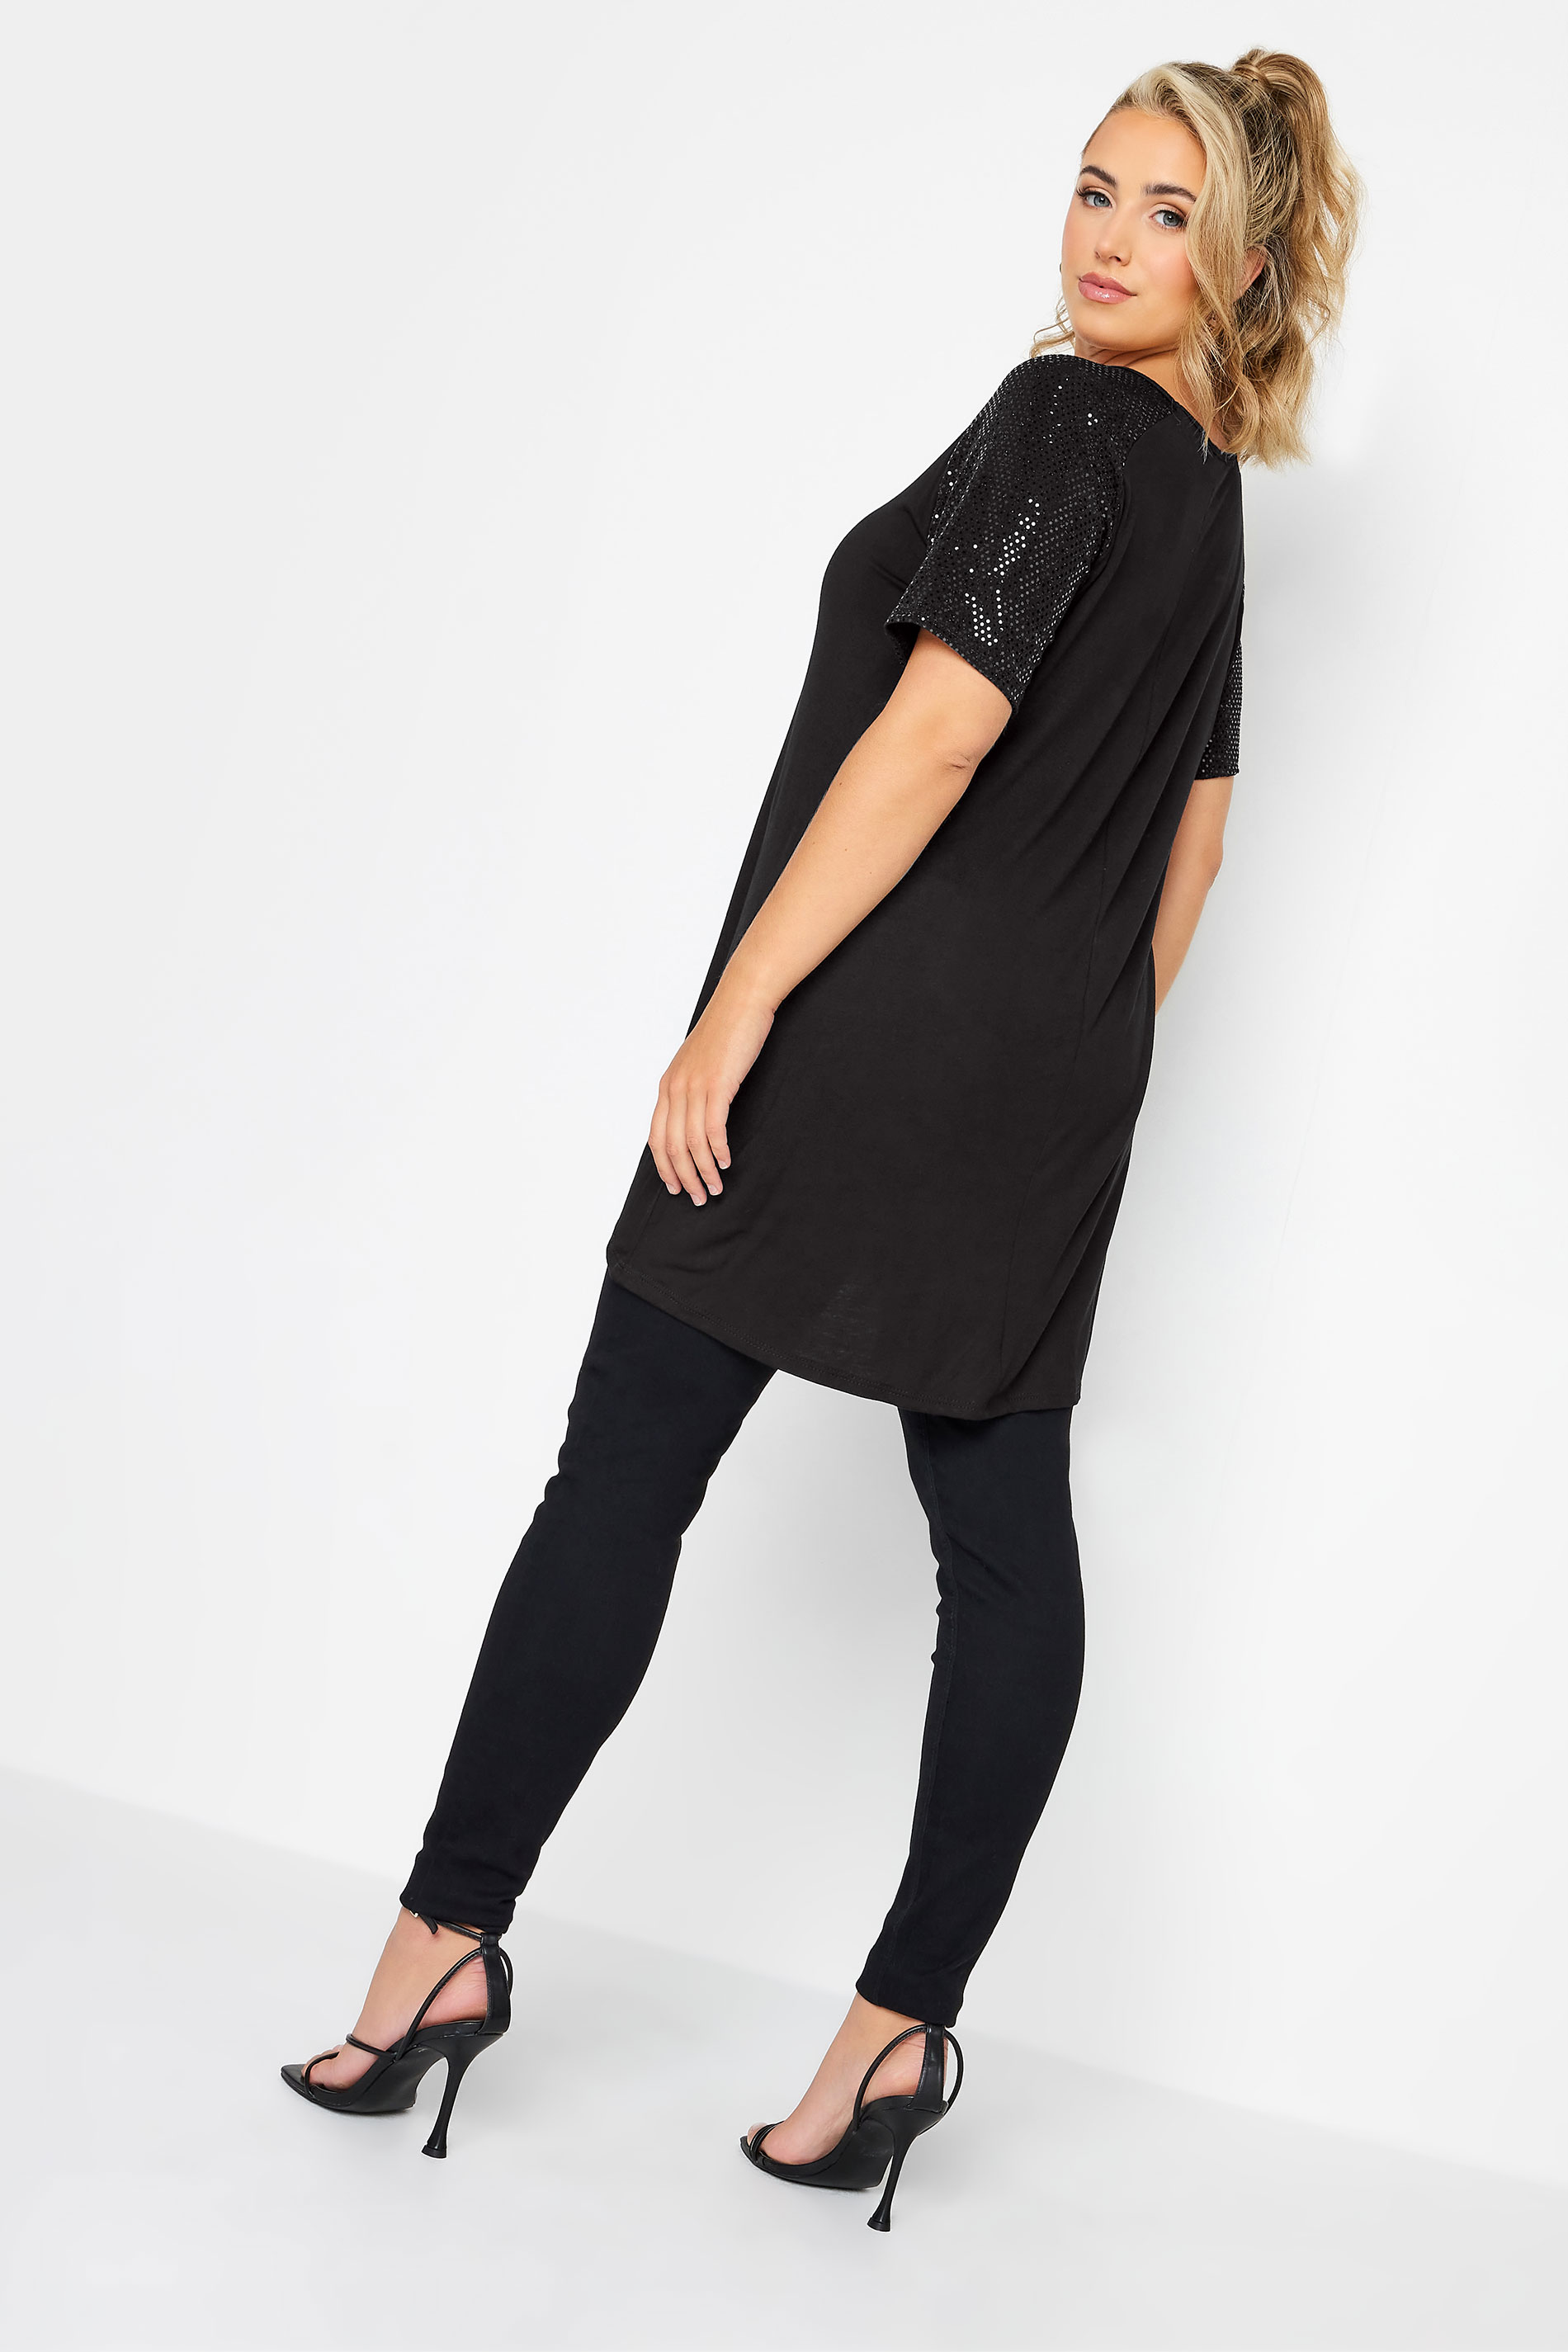 Plus Size Black Sequin Shoulder T-Shirt | Yours Clothing 3